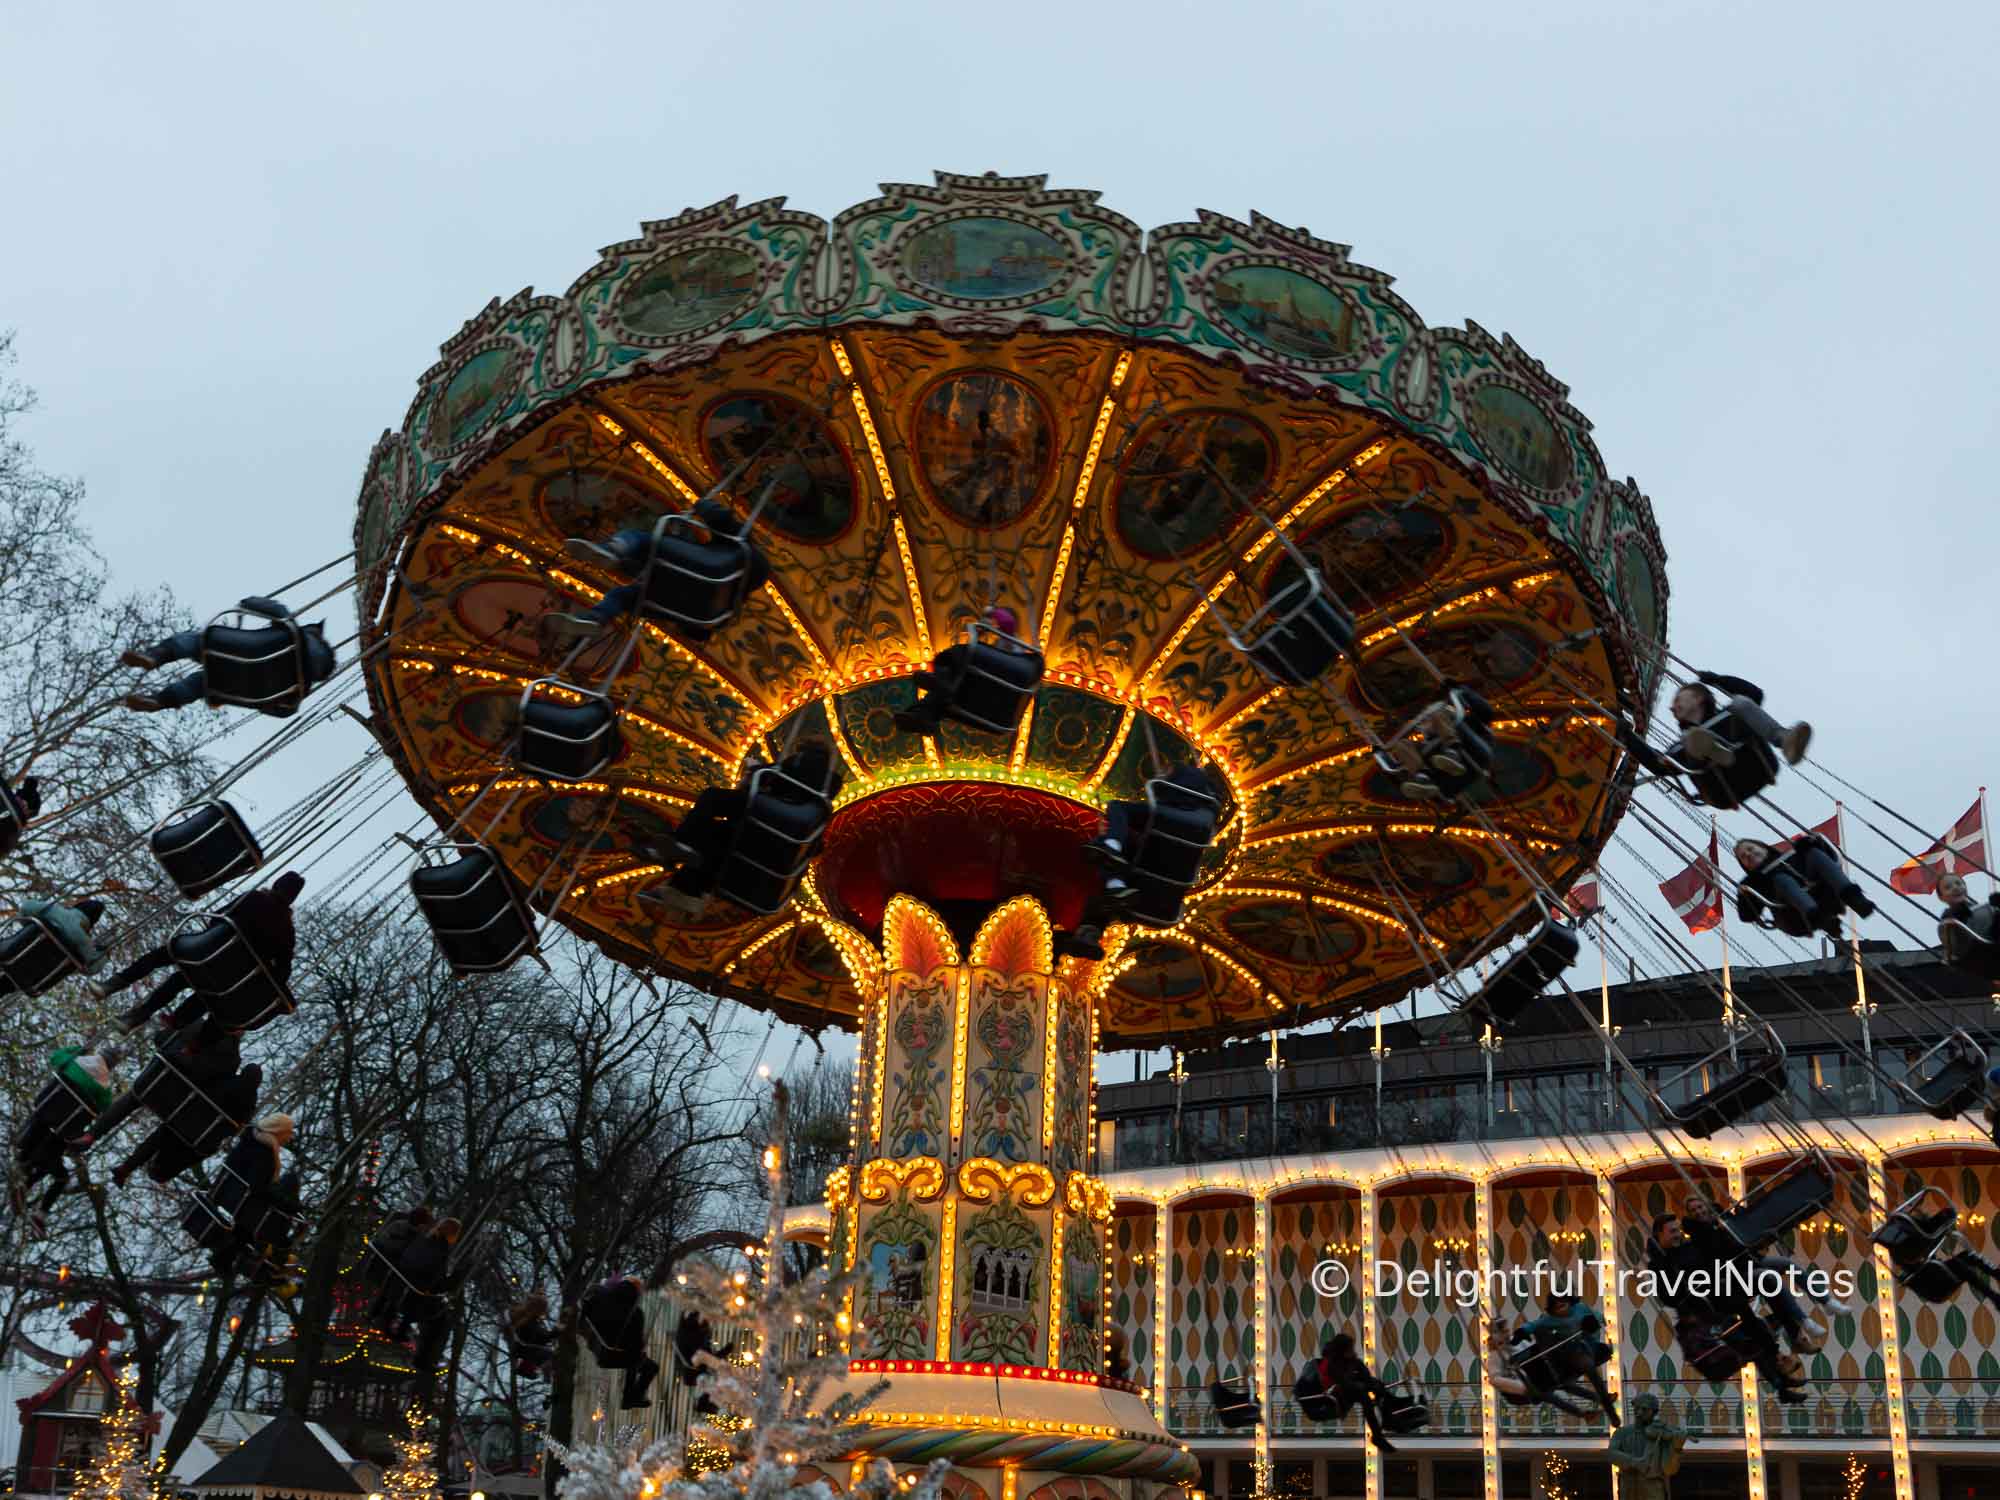 A thrill ride at Tivoli Gardens in Copenhagen.